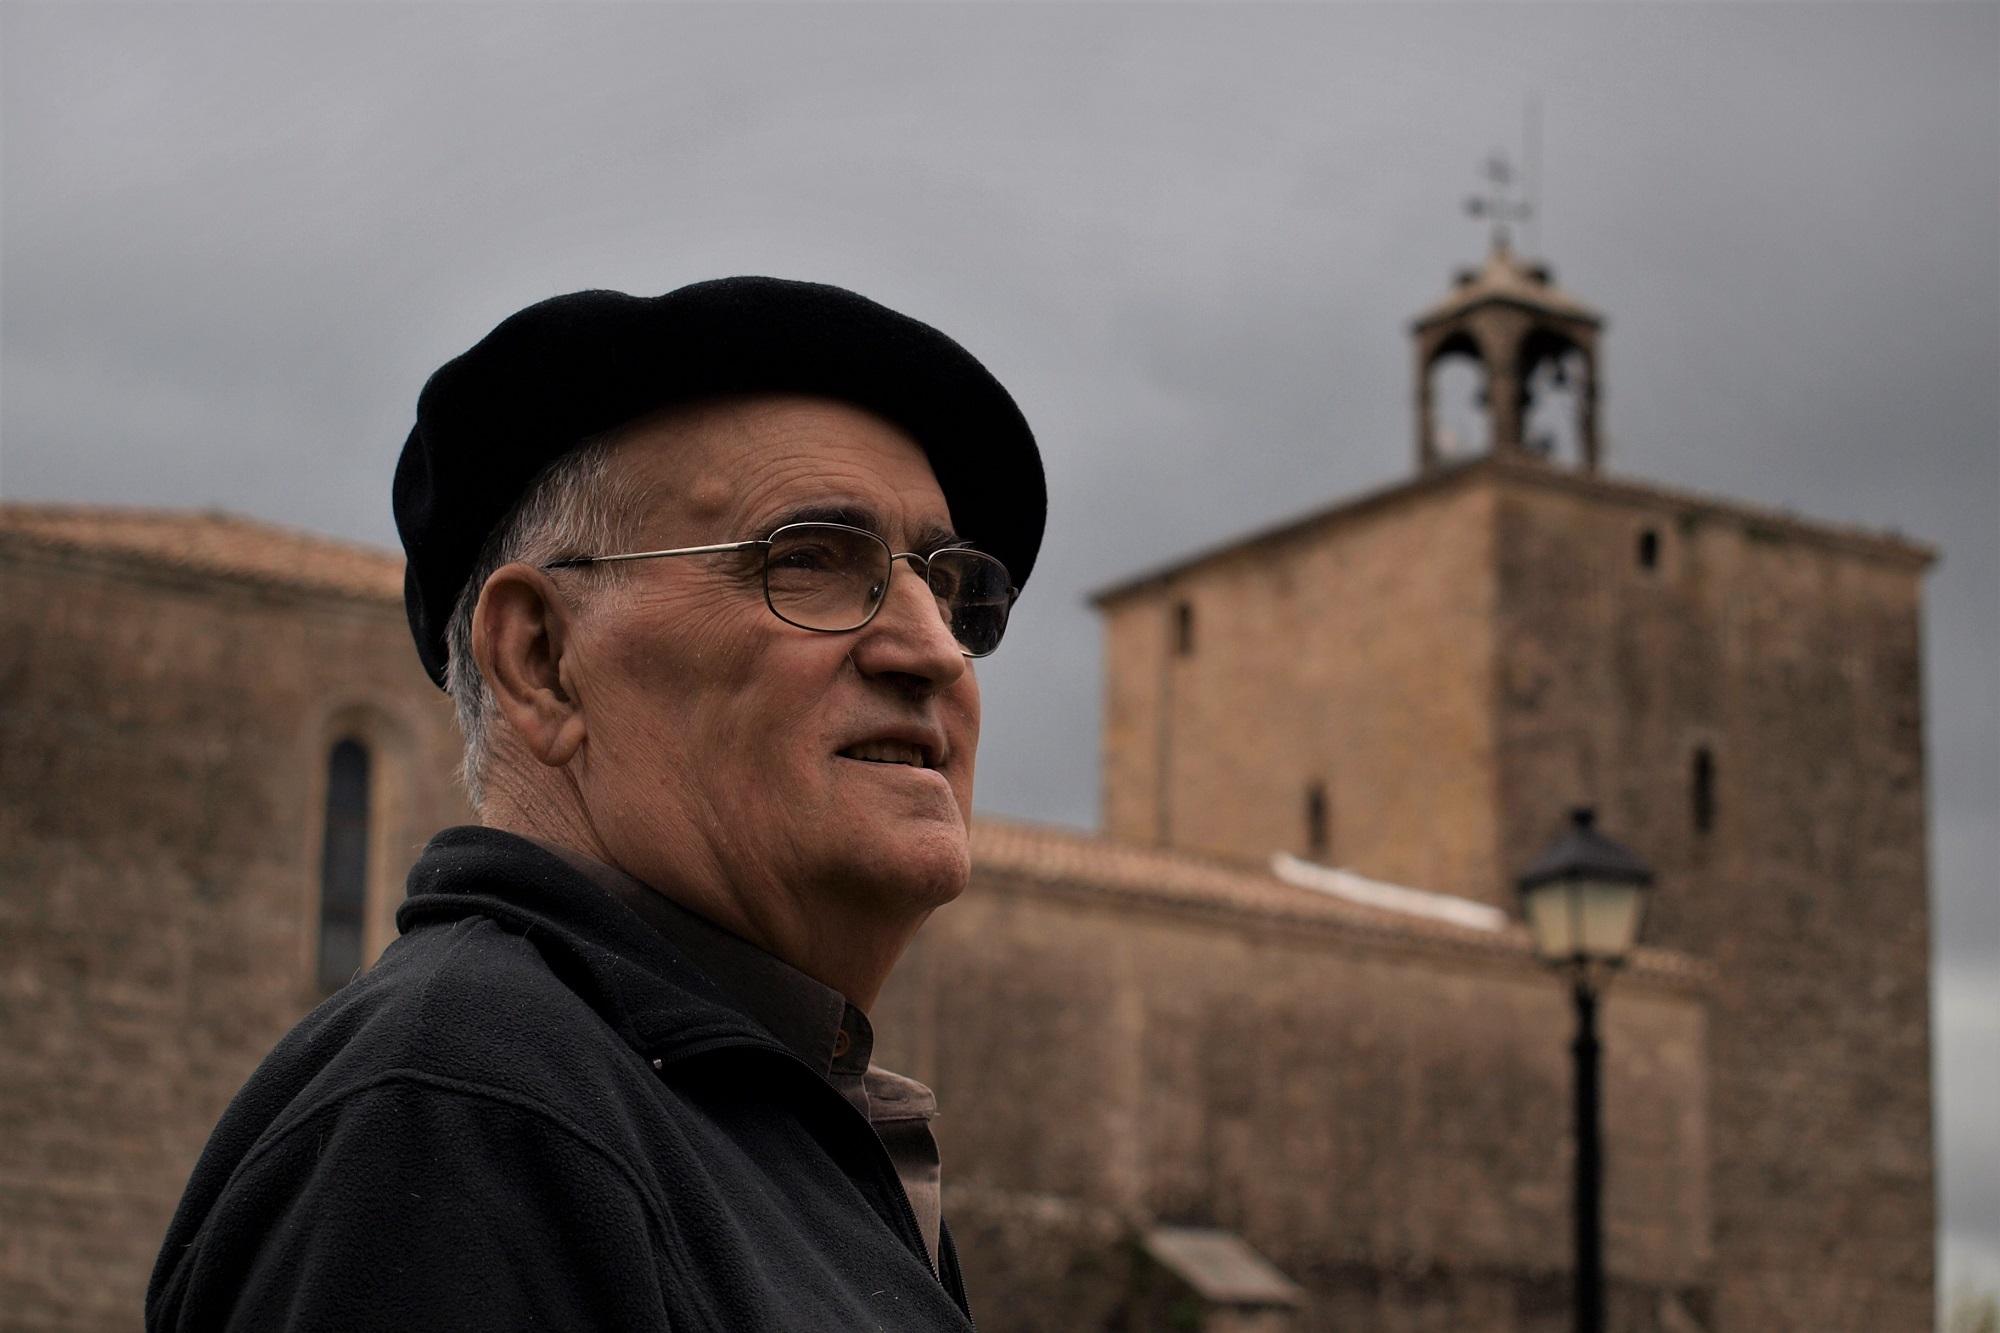 Plazido Erdozain, uno de los sacerdotes más activos de la Coordinadora Nacional de la Iglesia Popular en la década de los 70, reside en la actualidad en Aoiz, en Navarra. Foto Roberto Valencia.